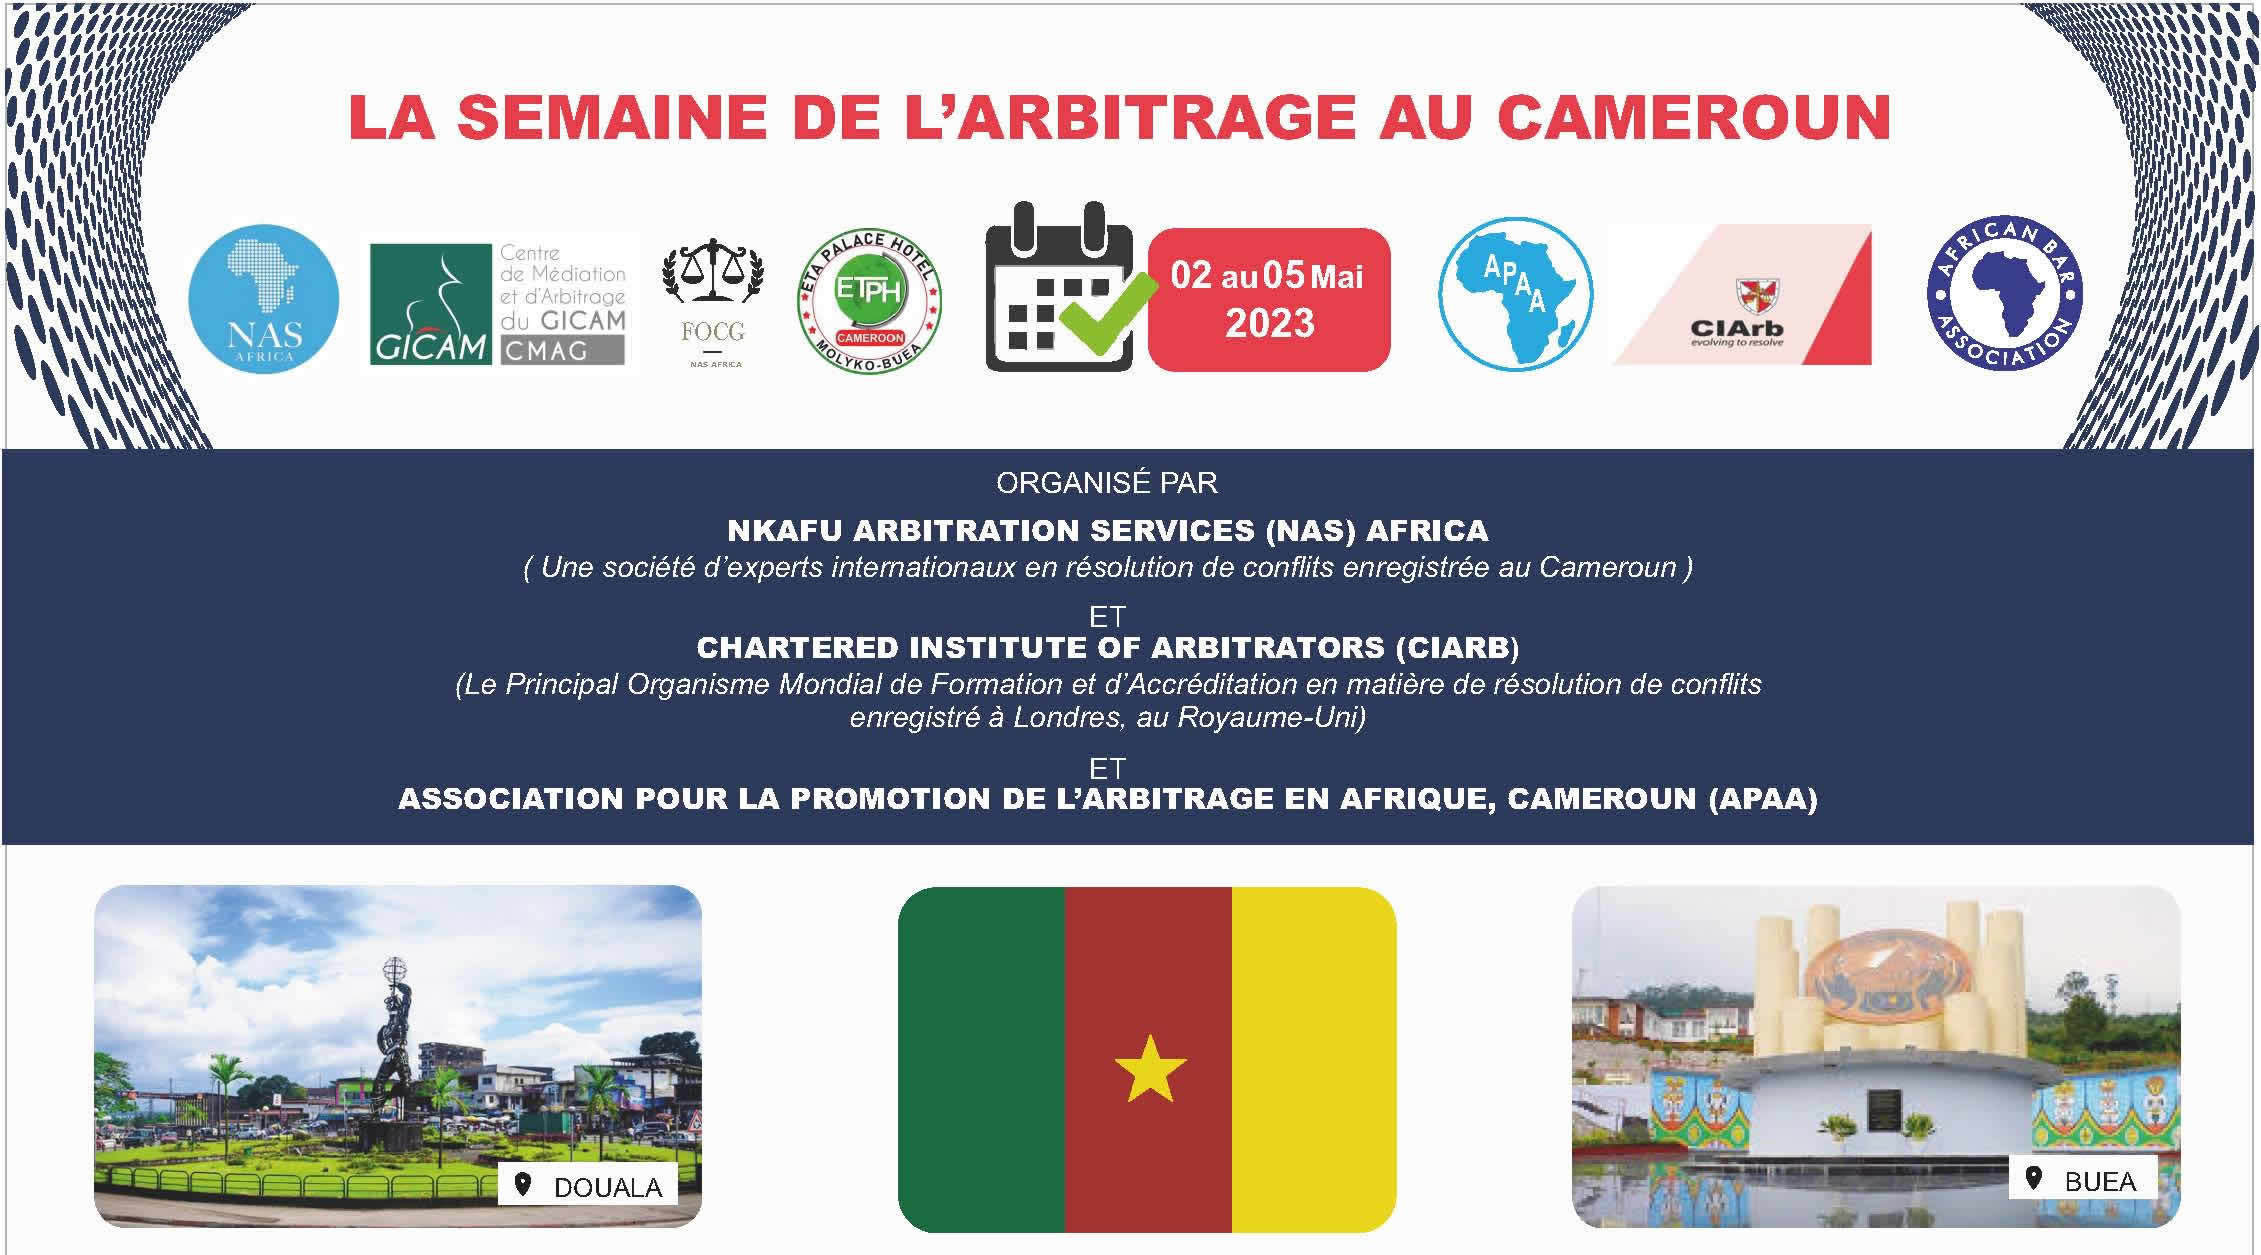 LA SEMAINE DE L’ARBITRAGE AU CAMEROUN